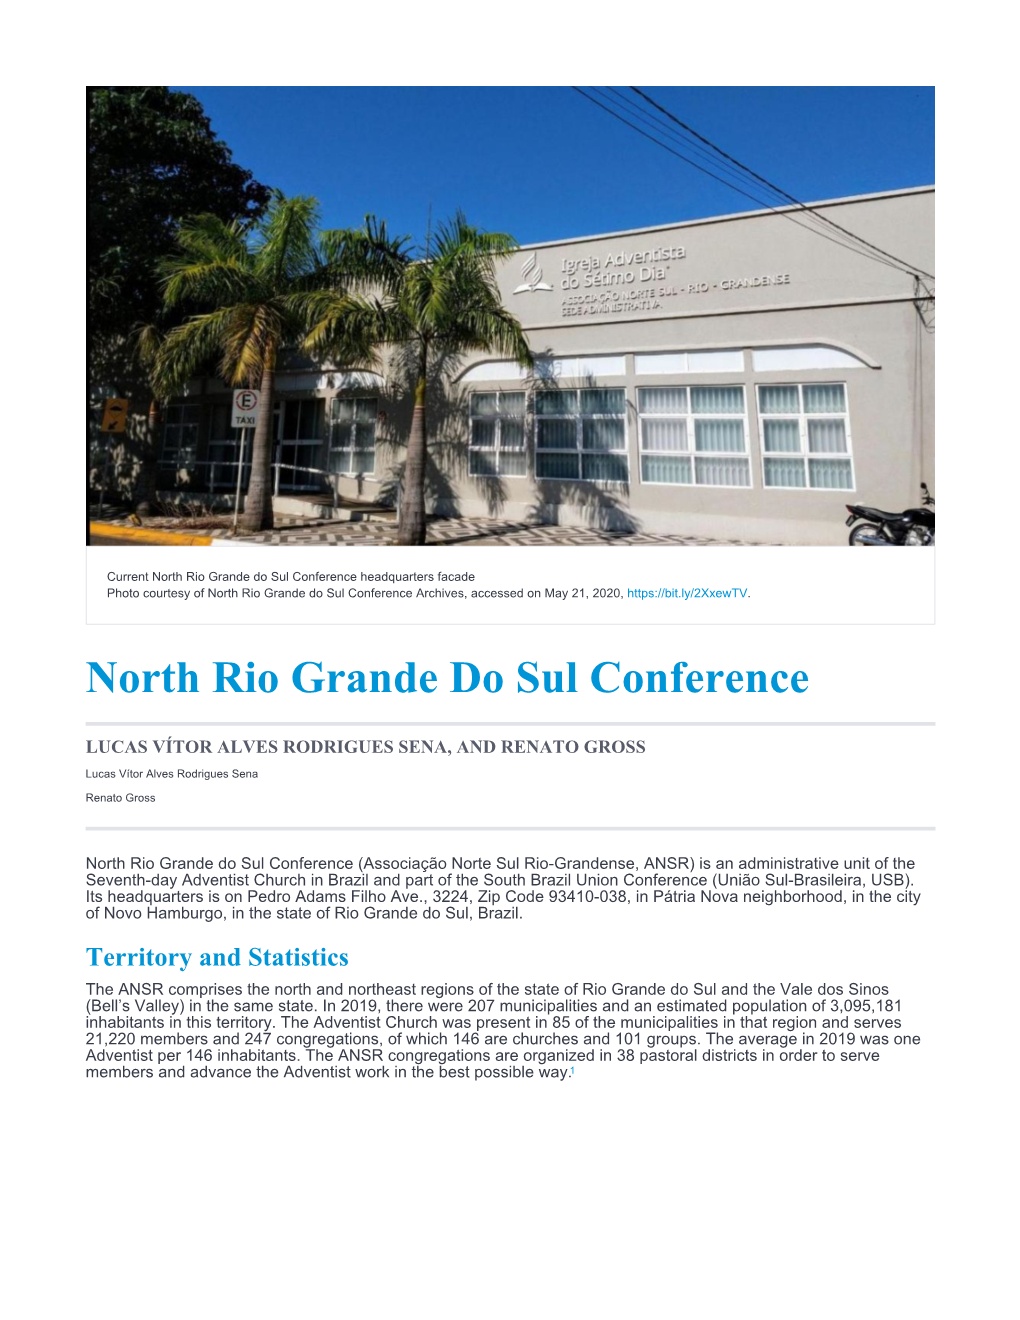 North Rio Grande Do Sul Conference Headquarters Facade Photo Courtesy of North Rio Grande Do Sul Conference Archives, Accessed on May 21, 2020